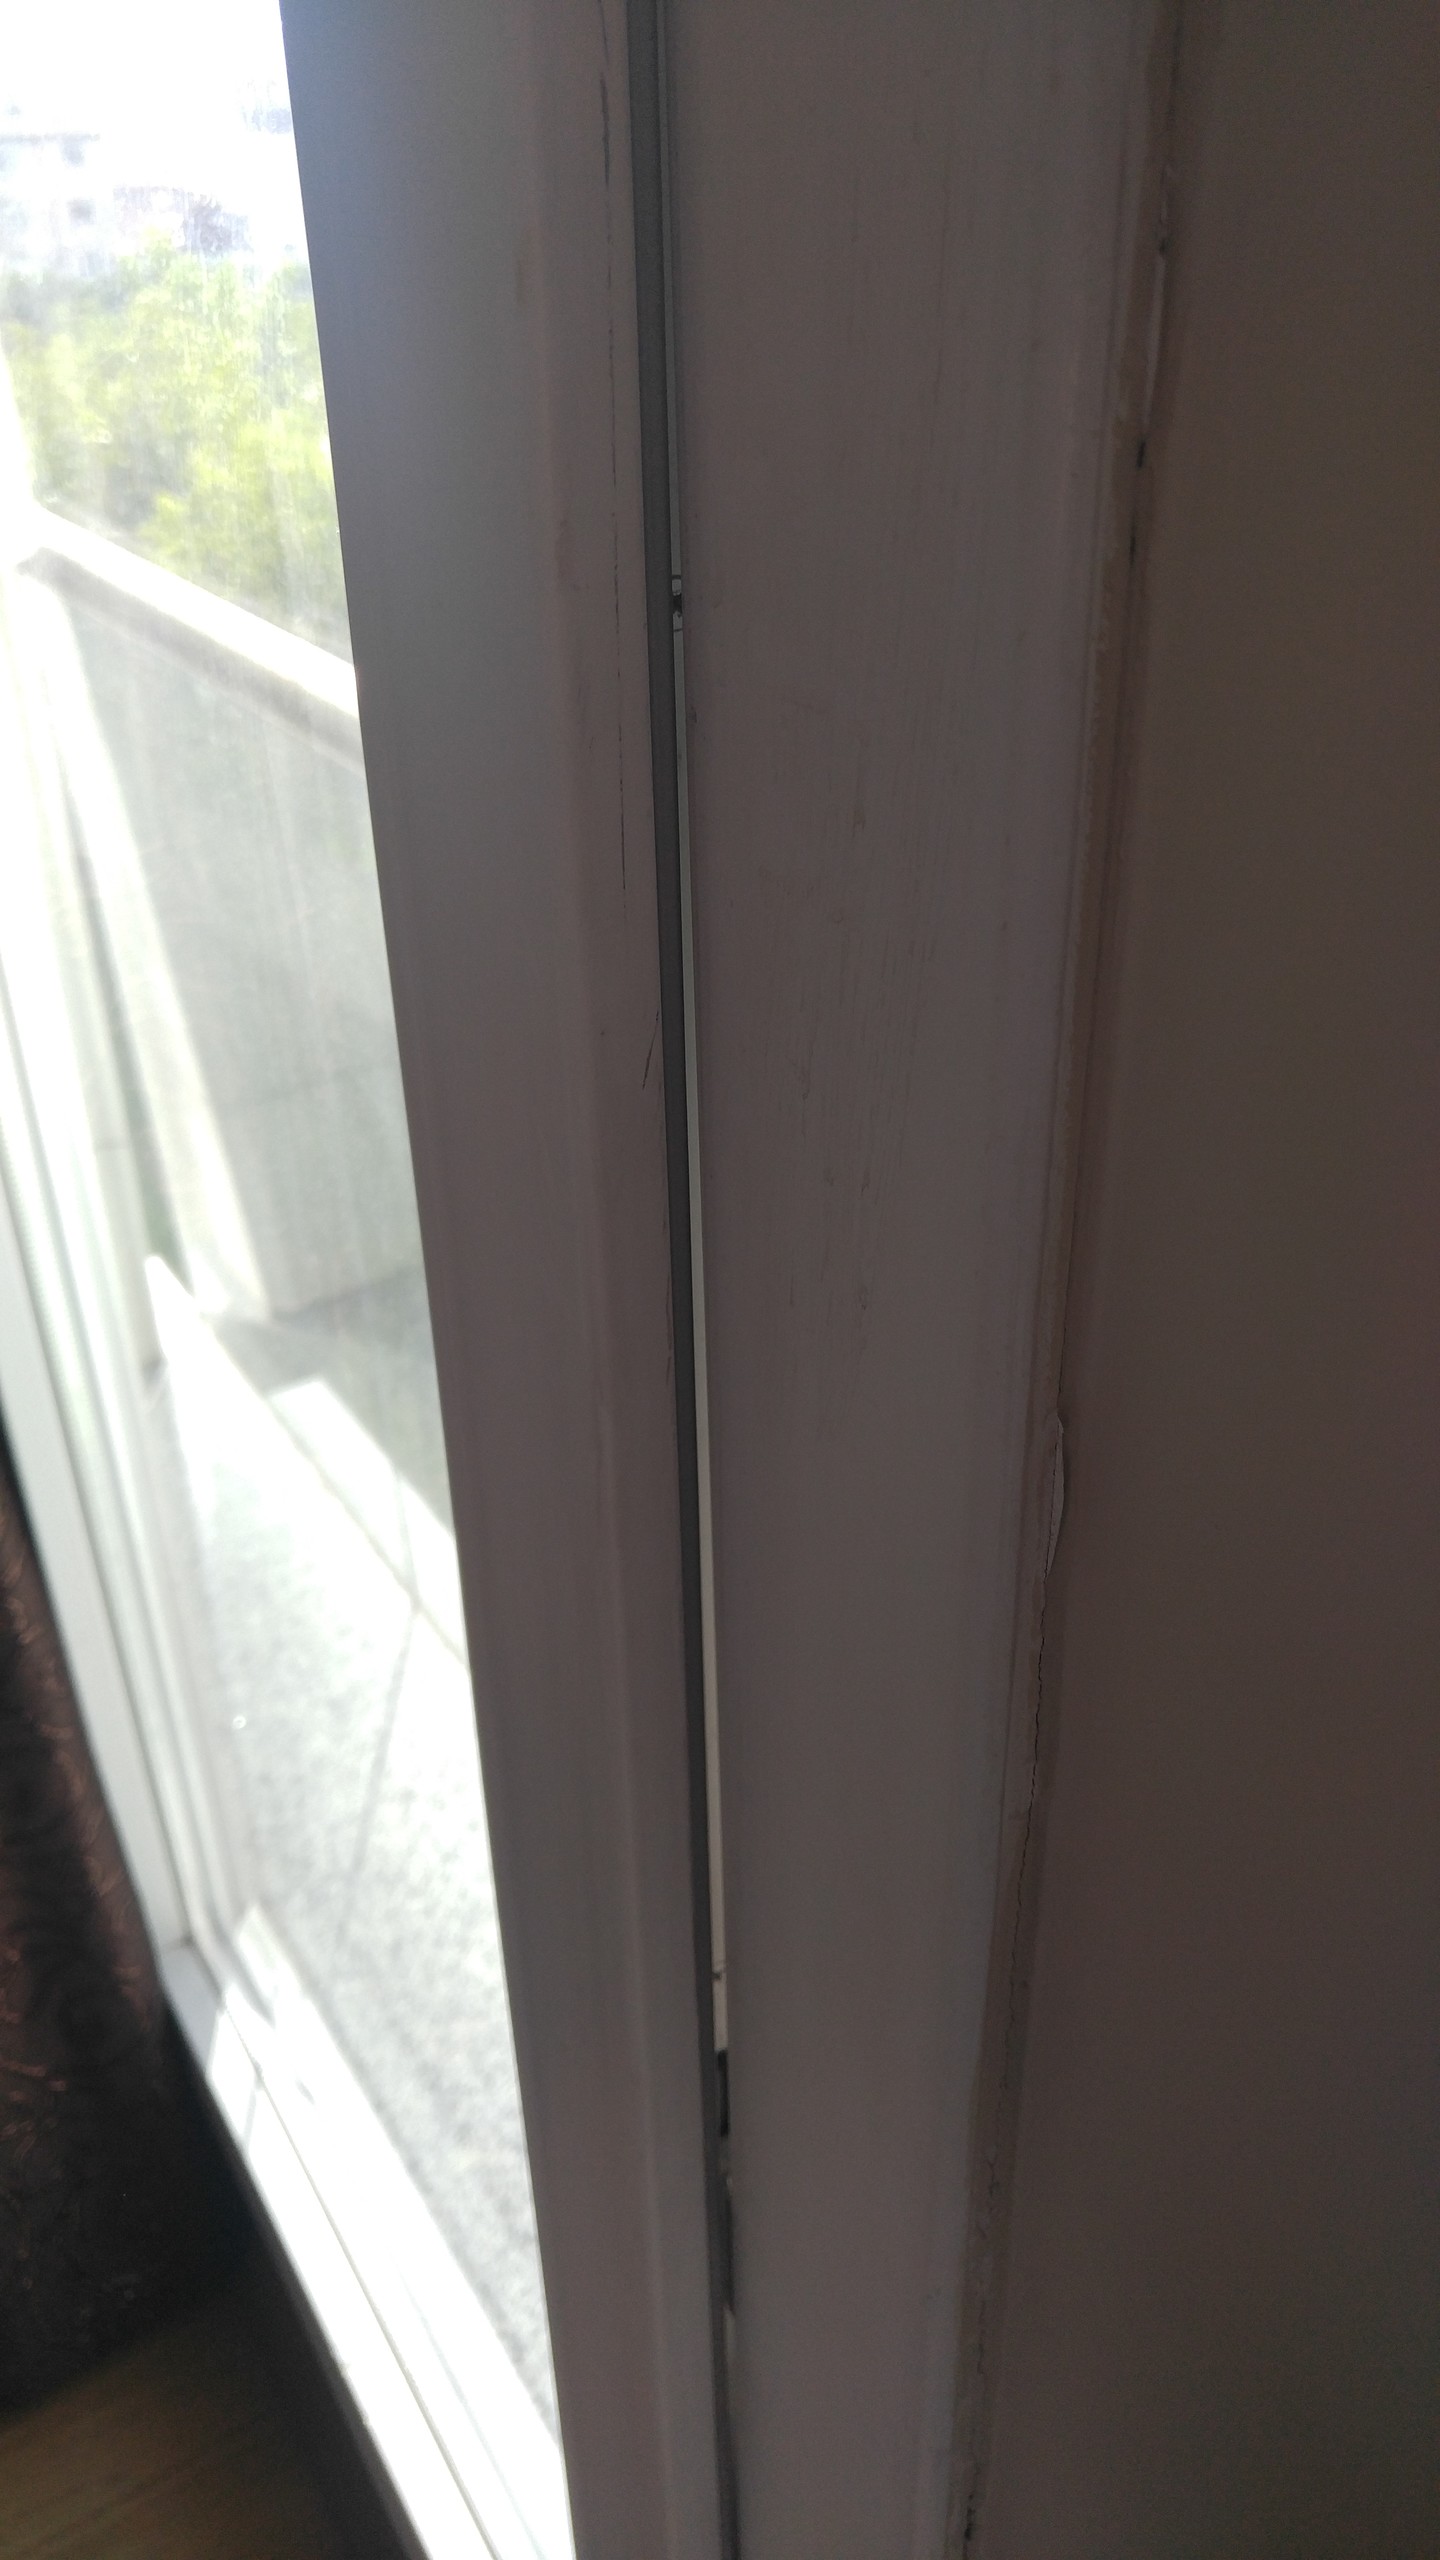  PVC Kapı ve Pencere Ayarı Nasıl Yapılır?